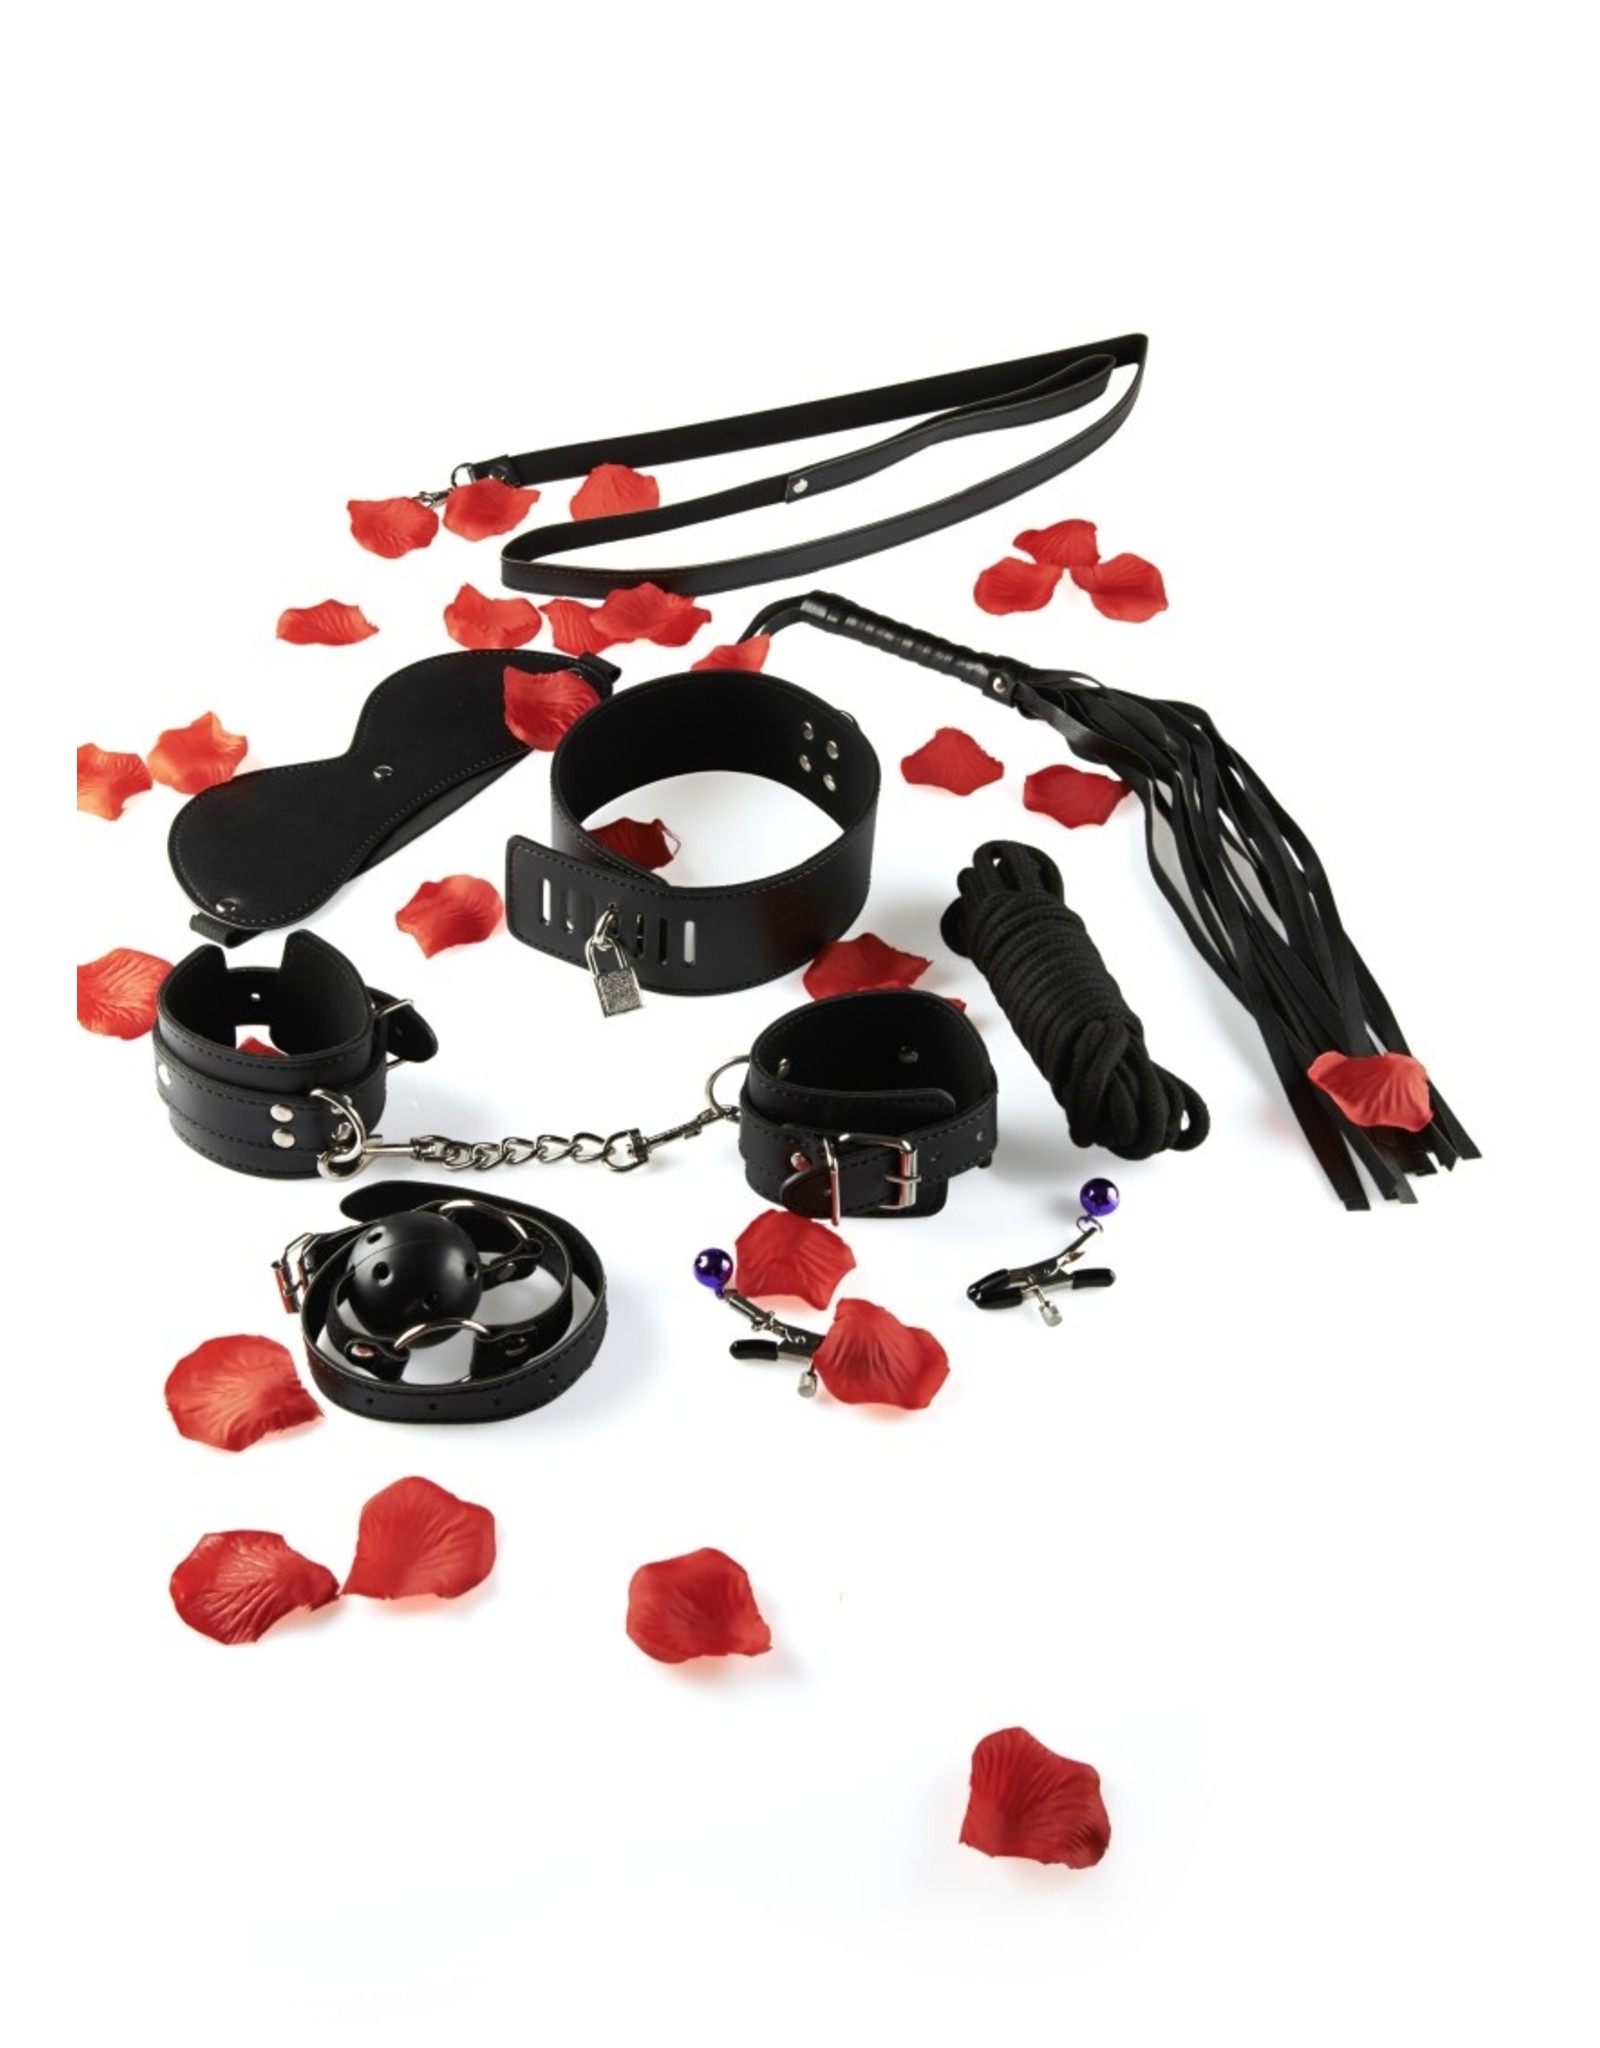 ToyJoy Amazing bondage sex toy kit